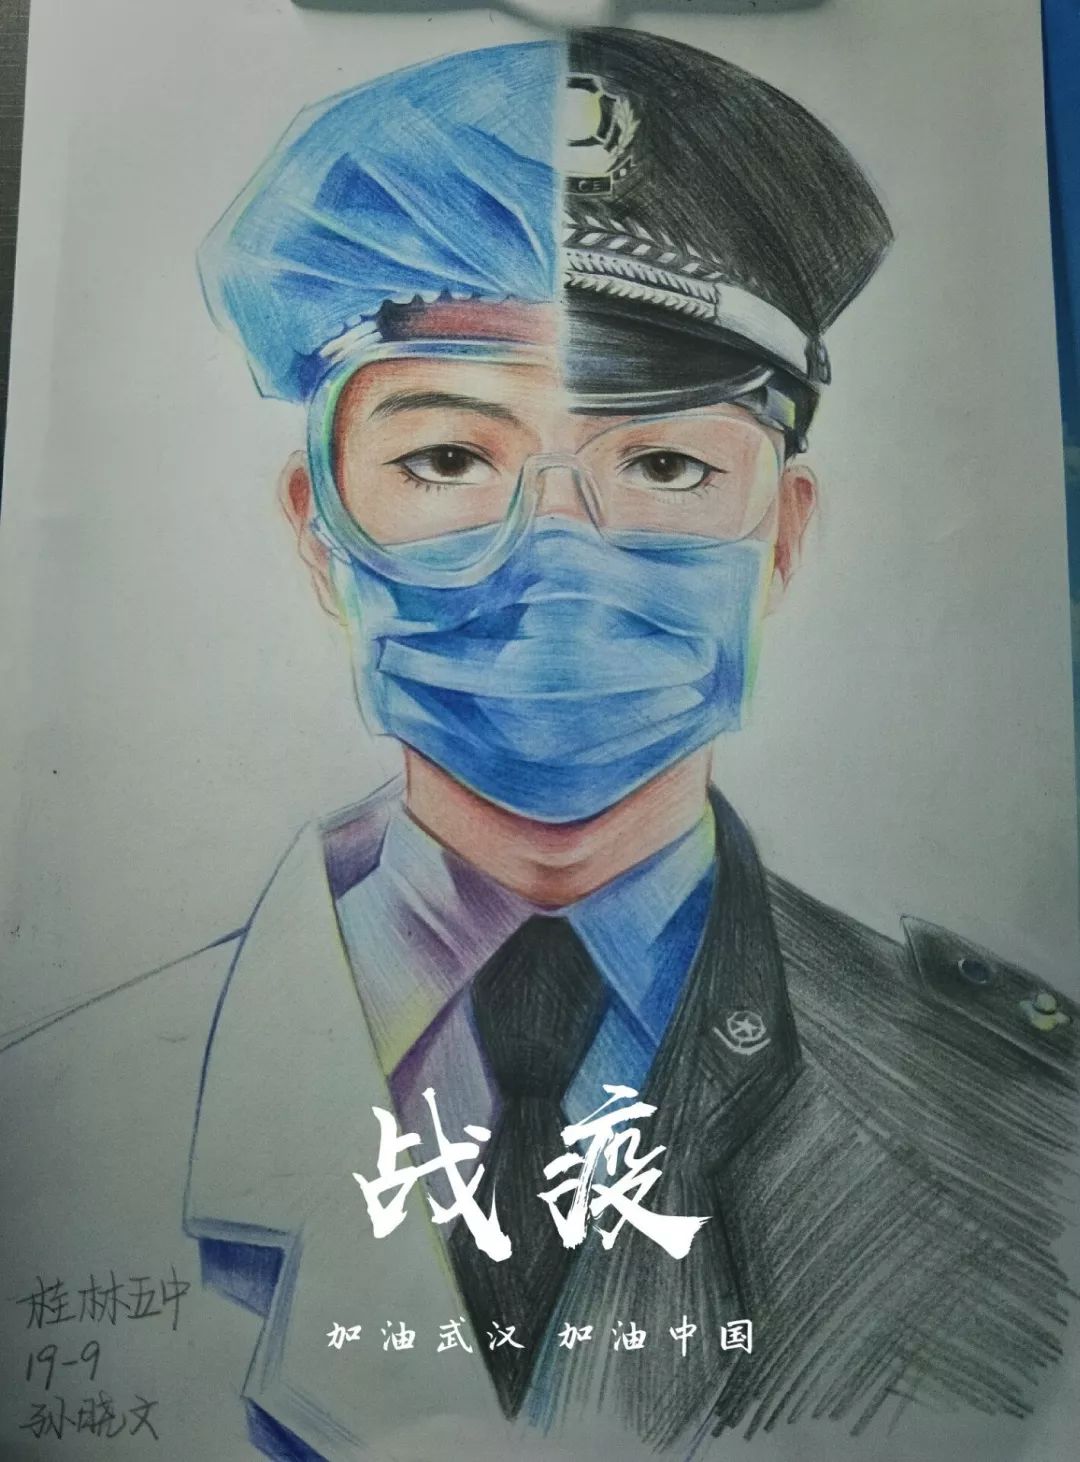 动态|致敬最美逆行者!桂林市第五中学用画笔为疫情防控贡献力量